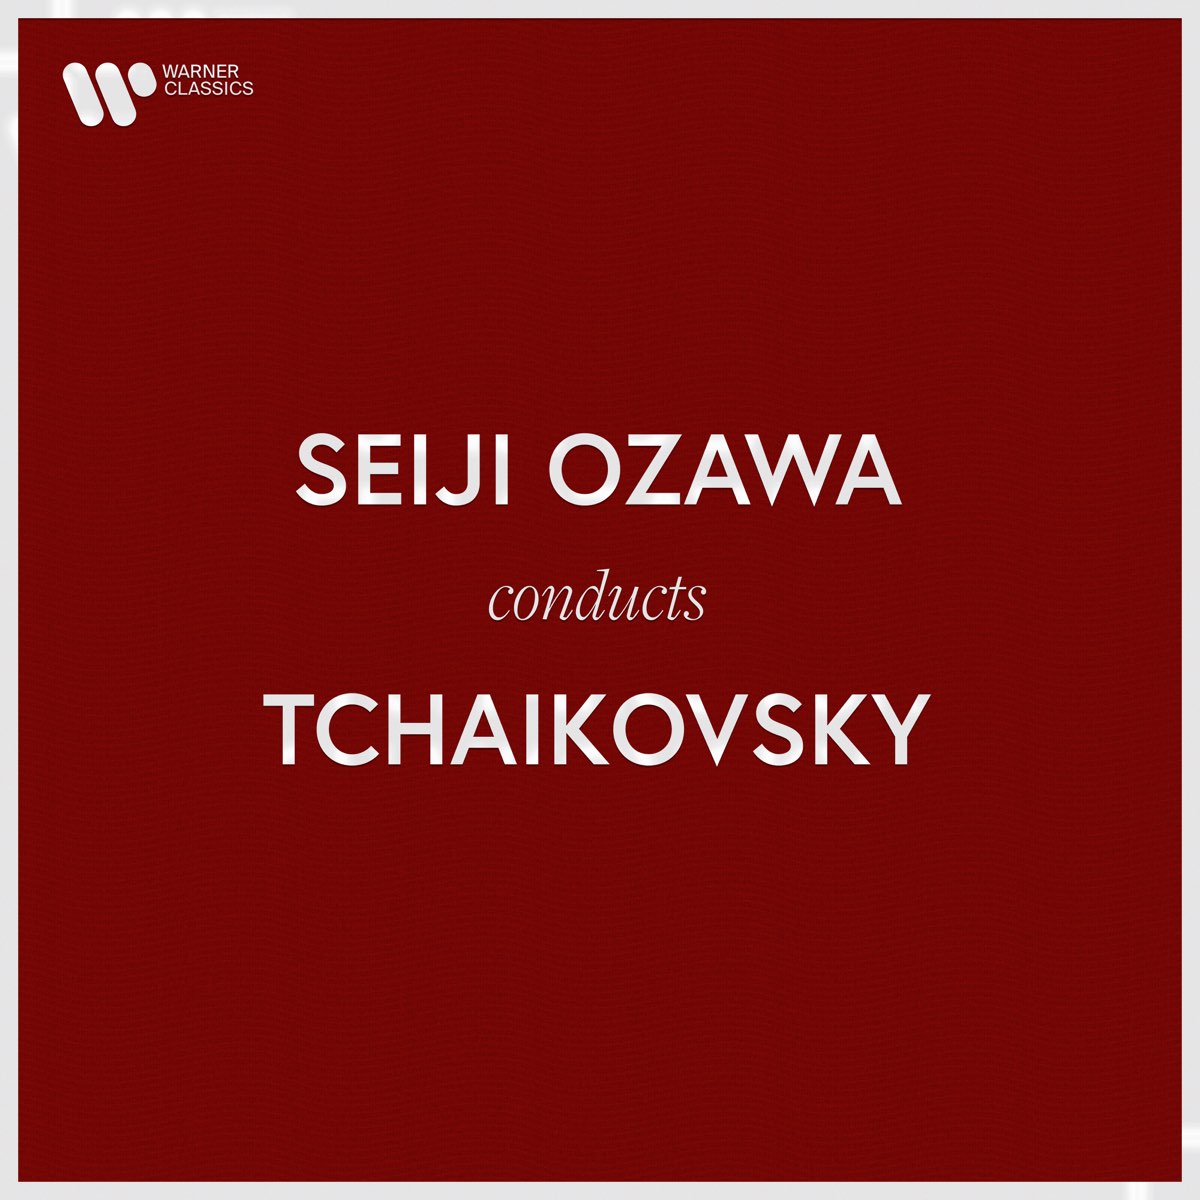 Seiji Ozawa Conducts Tchaikovsky - 小澤征爾のアルバム - Apple Music